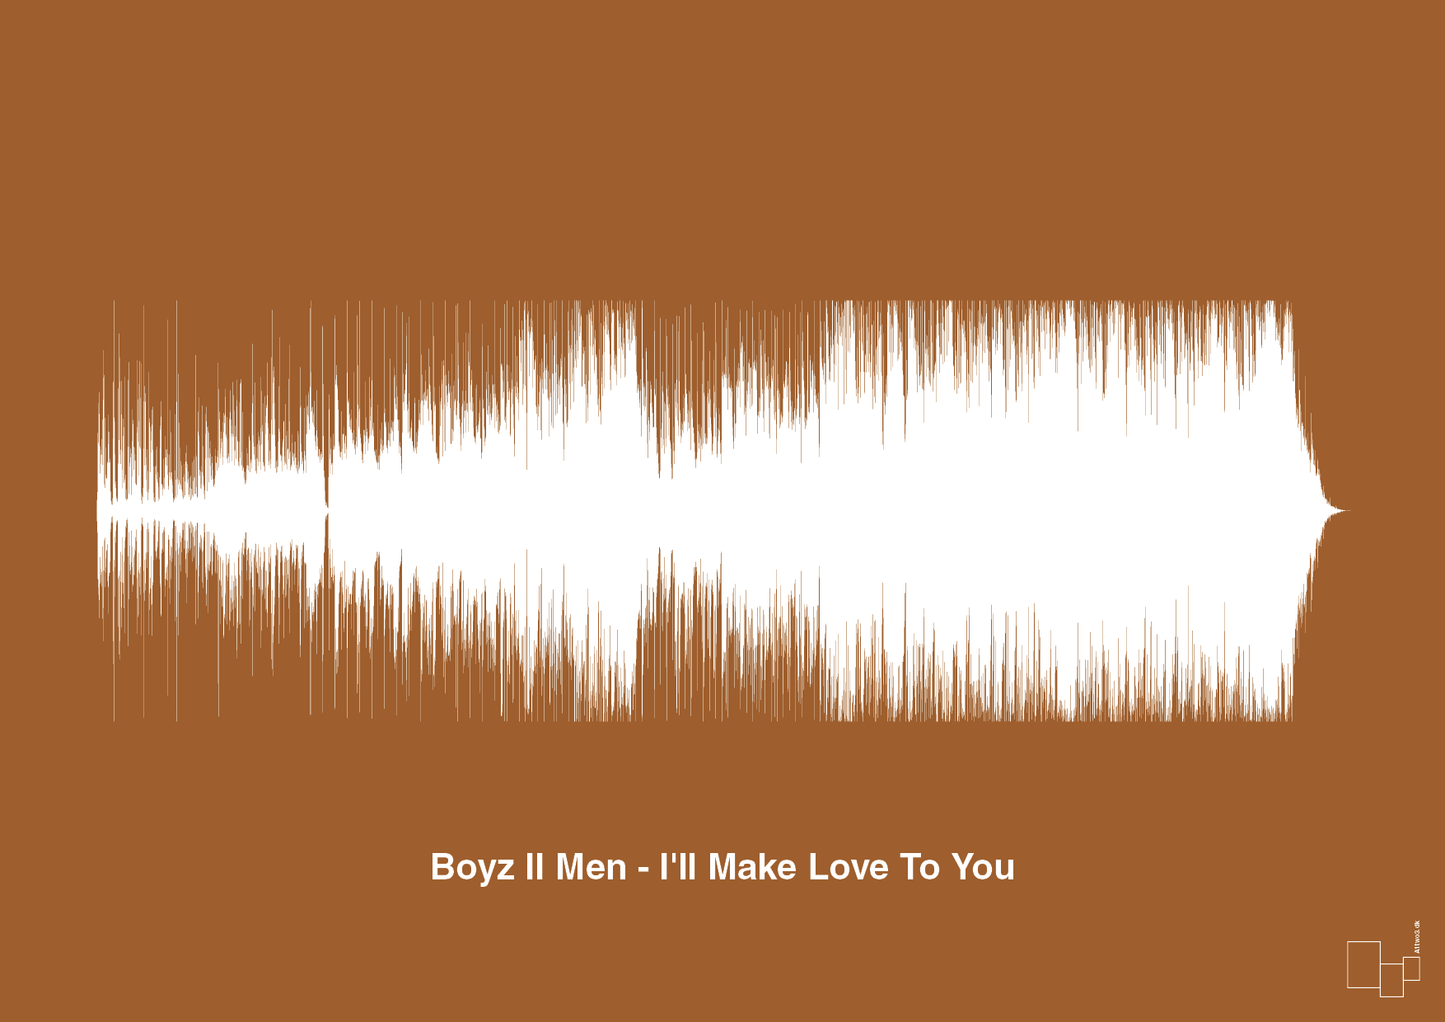 boyz II men - i'll make love to you - Plakat med Musik i Cognac